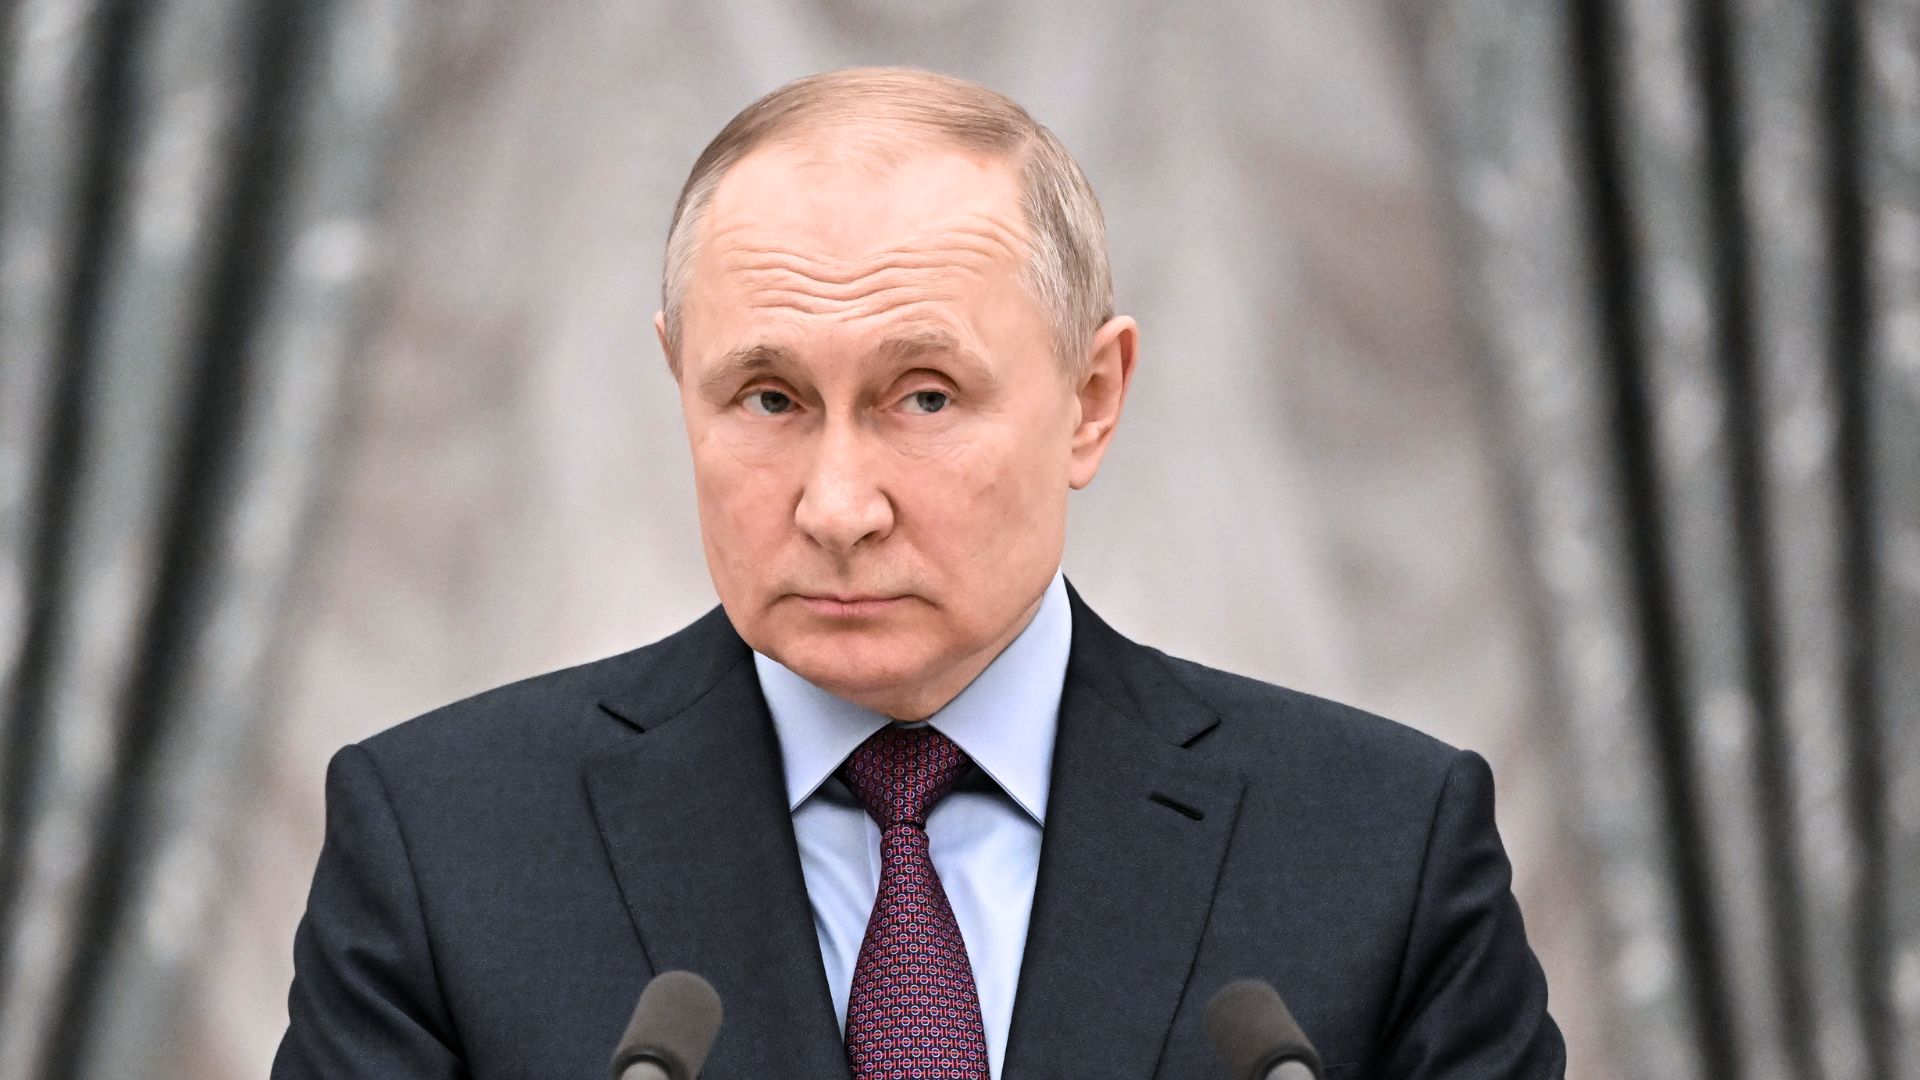 रूसी राष्ट्रपति पुटिनद्वारा भूकम्पबाट भएको क्षतिप्रति दुःख व्यक्त